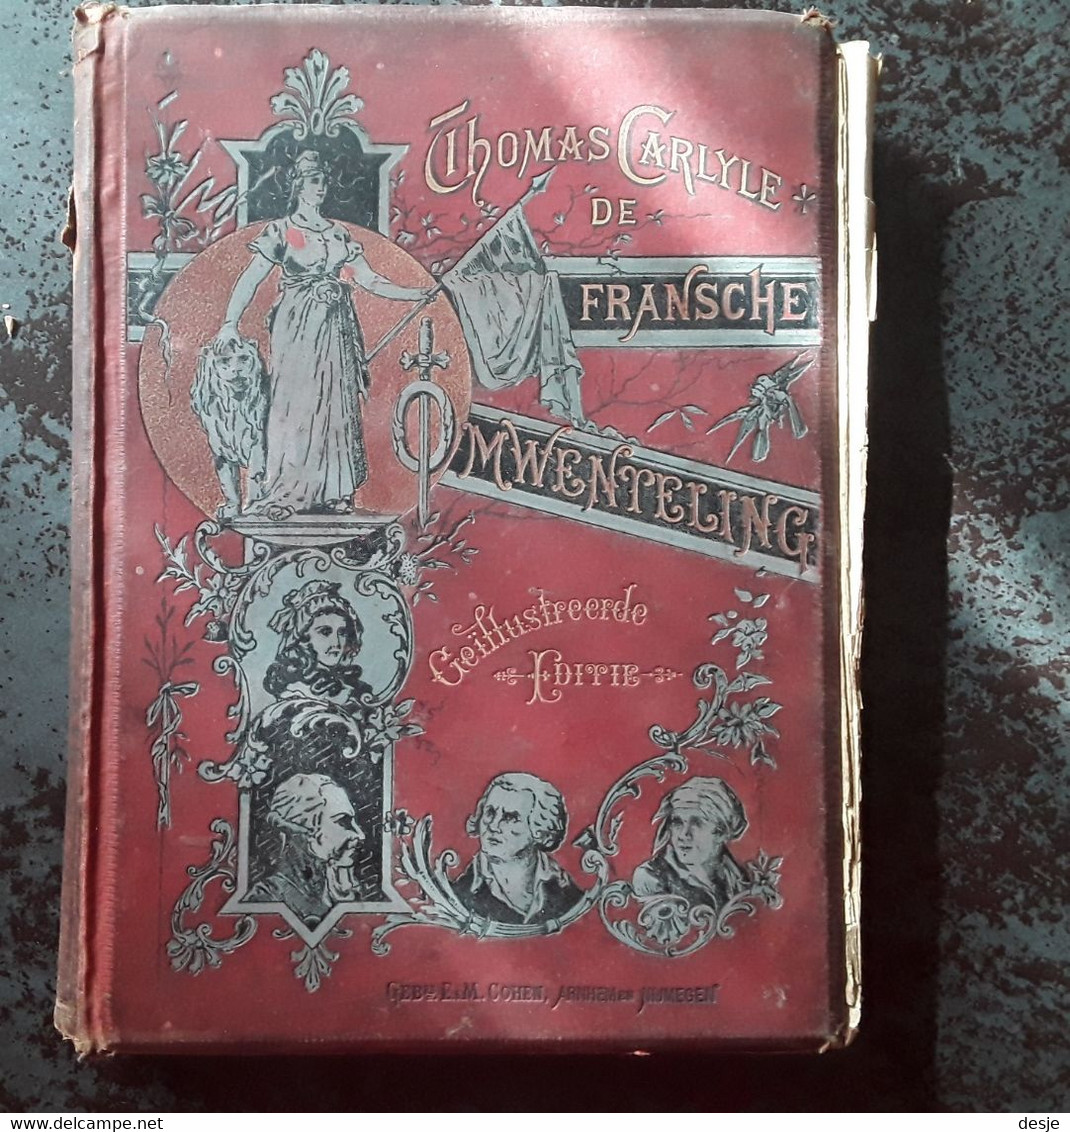 De Fransche Omwenteling Door Thomas Carlyle,tweede Deel De Constitutie, 4de Herziene Druk, Rond 1900, Nijmegen, 316 Pp. - Anciens